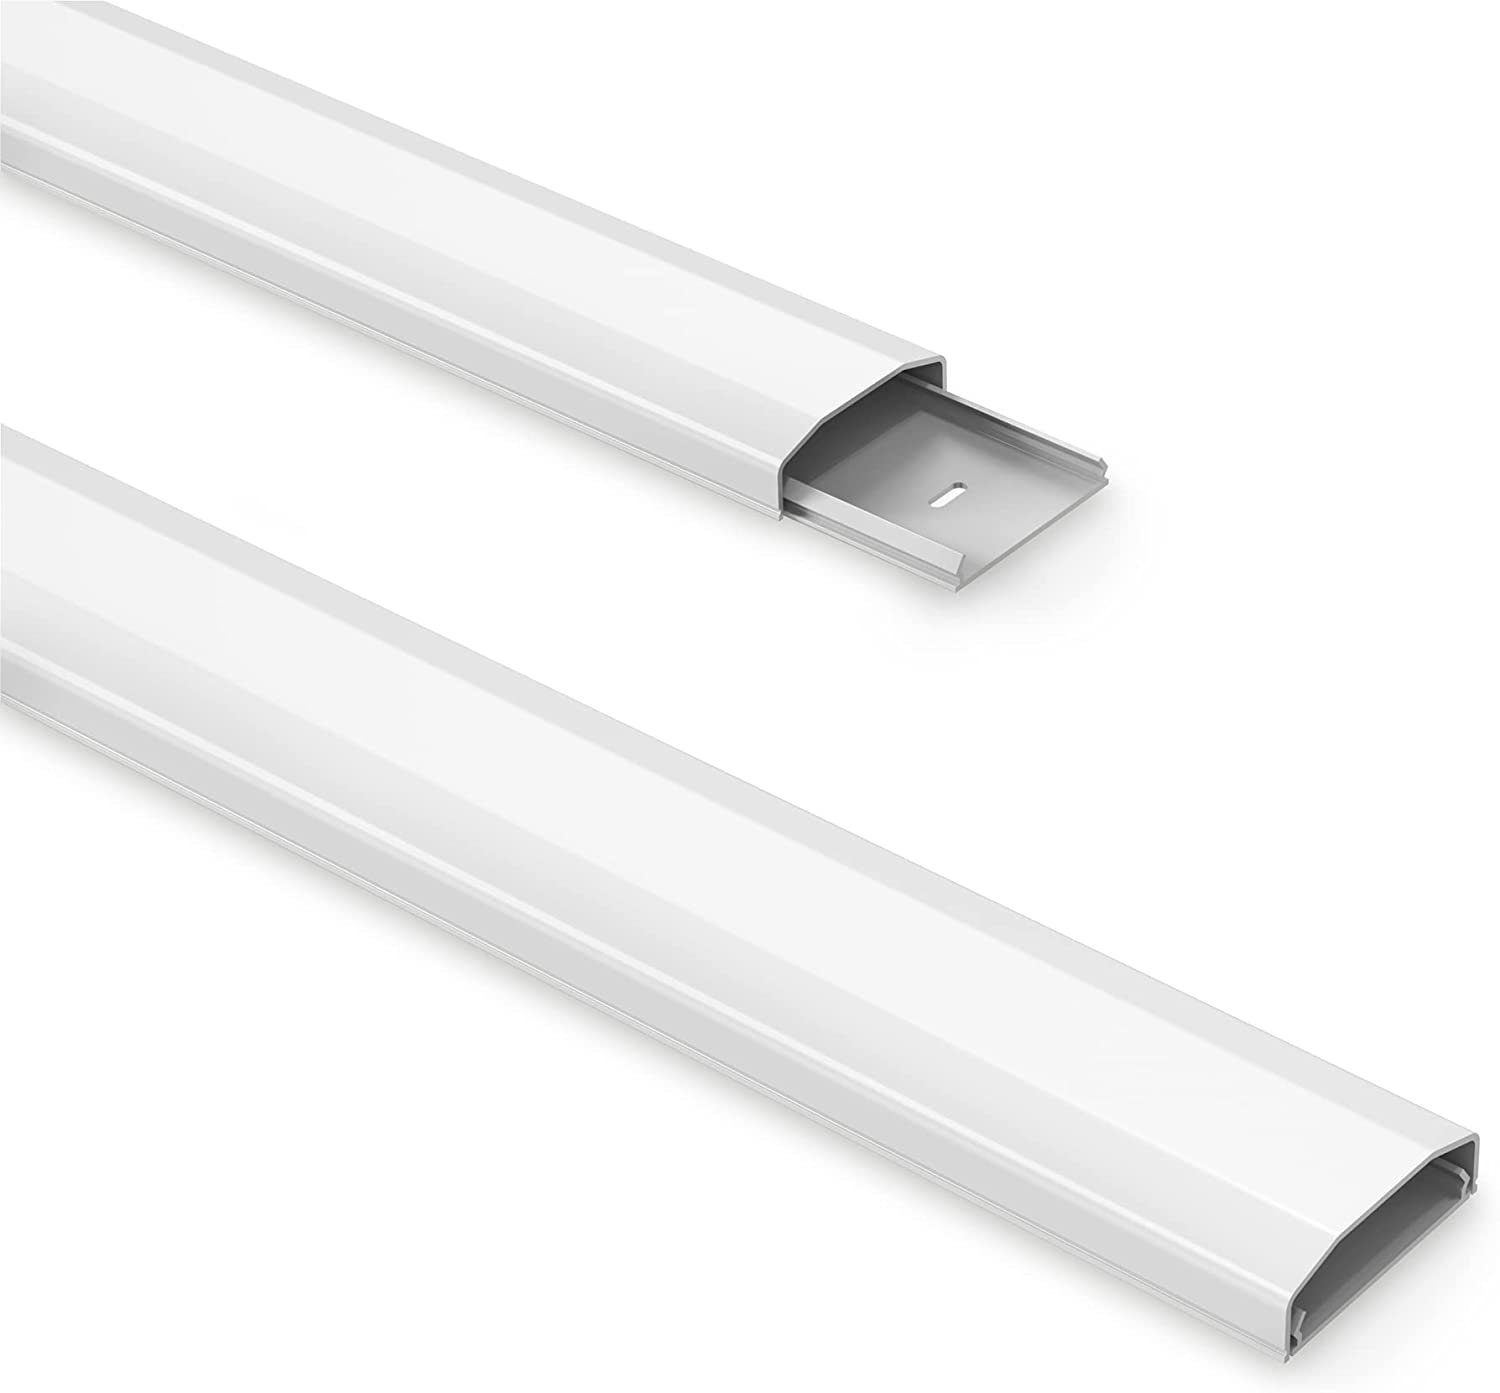 PureMounts Kabelkanal mit Klebeband + Schrauben/Dübel, aus Kunststoff,  Länge: 50cm, Breite 6cm, Farbe: weiß